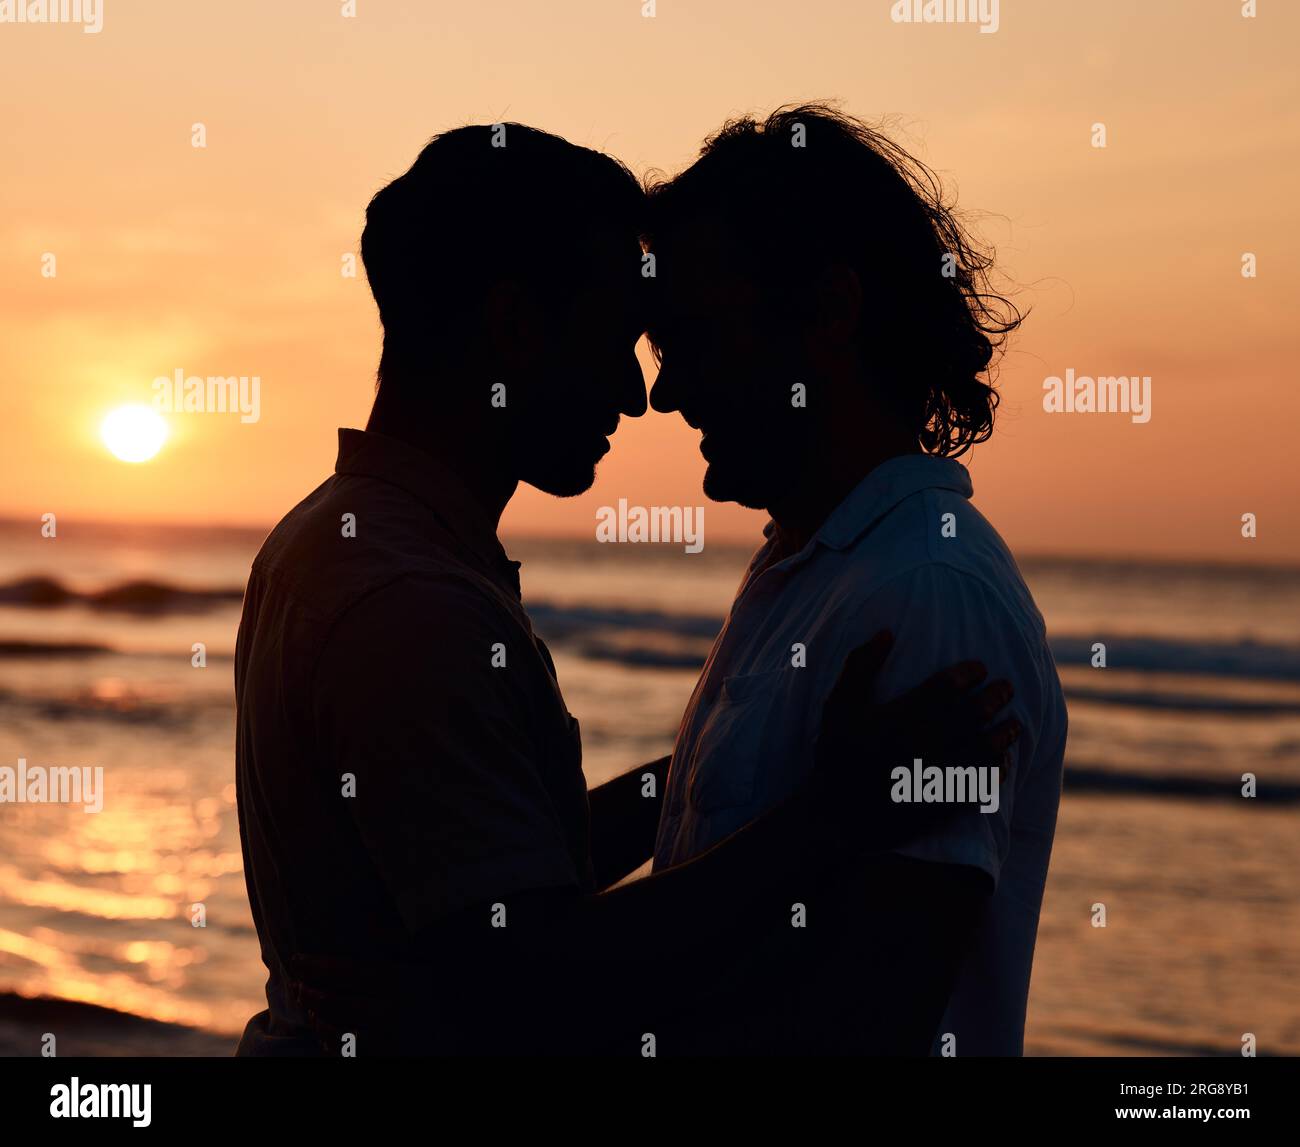 Silhouette, Sonnenuntergang und schwule Männer am Strand, Liebe und Schatten auf Sommerinsel Urlaub zusammen in Thailand. Sonnenschein, Meer und Romantik, lgbt-Pärchen Stockfoto